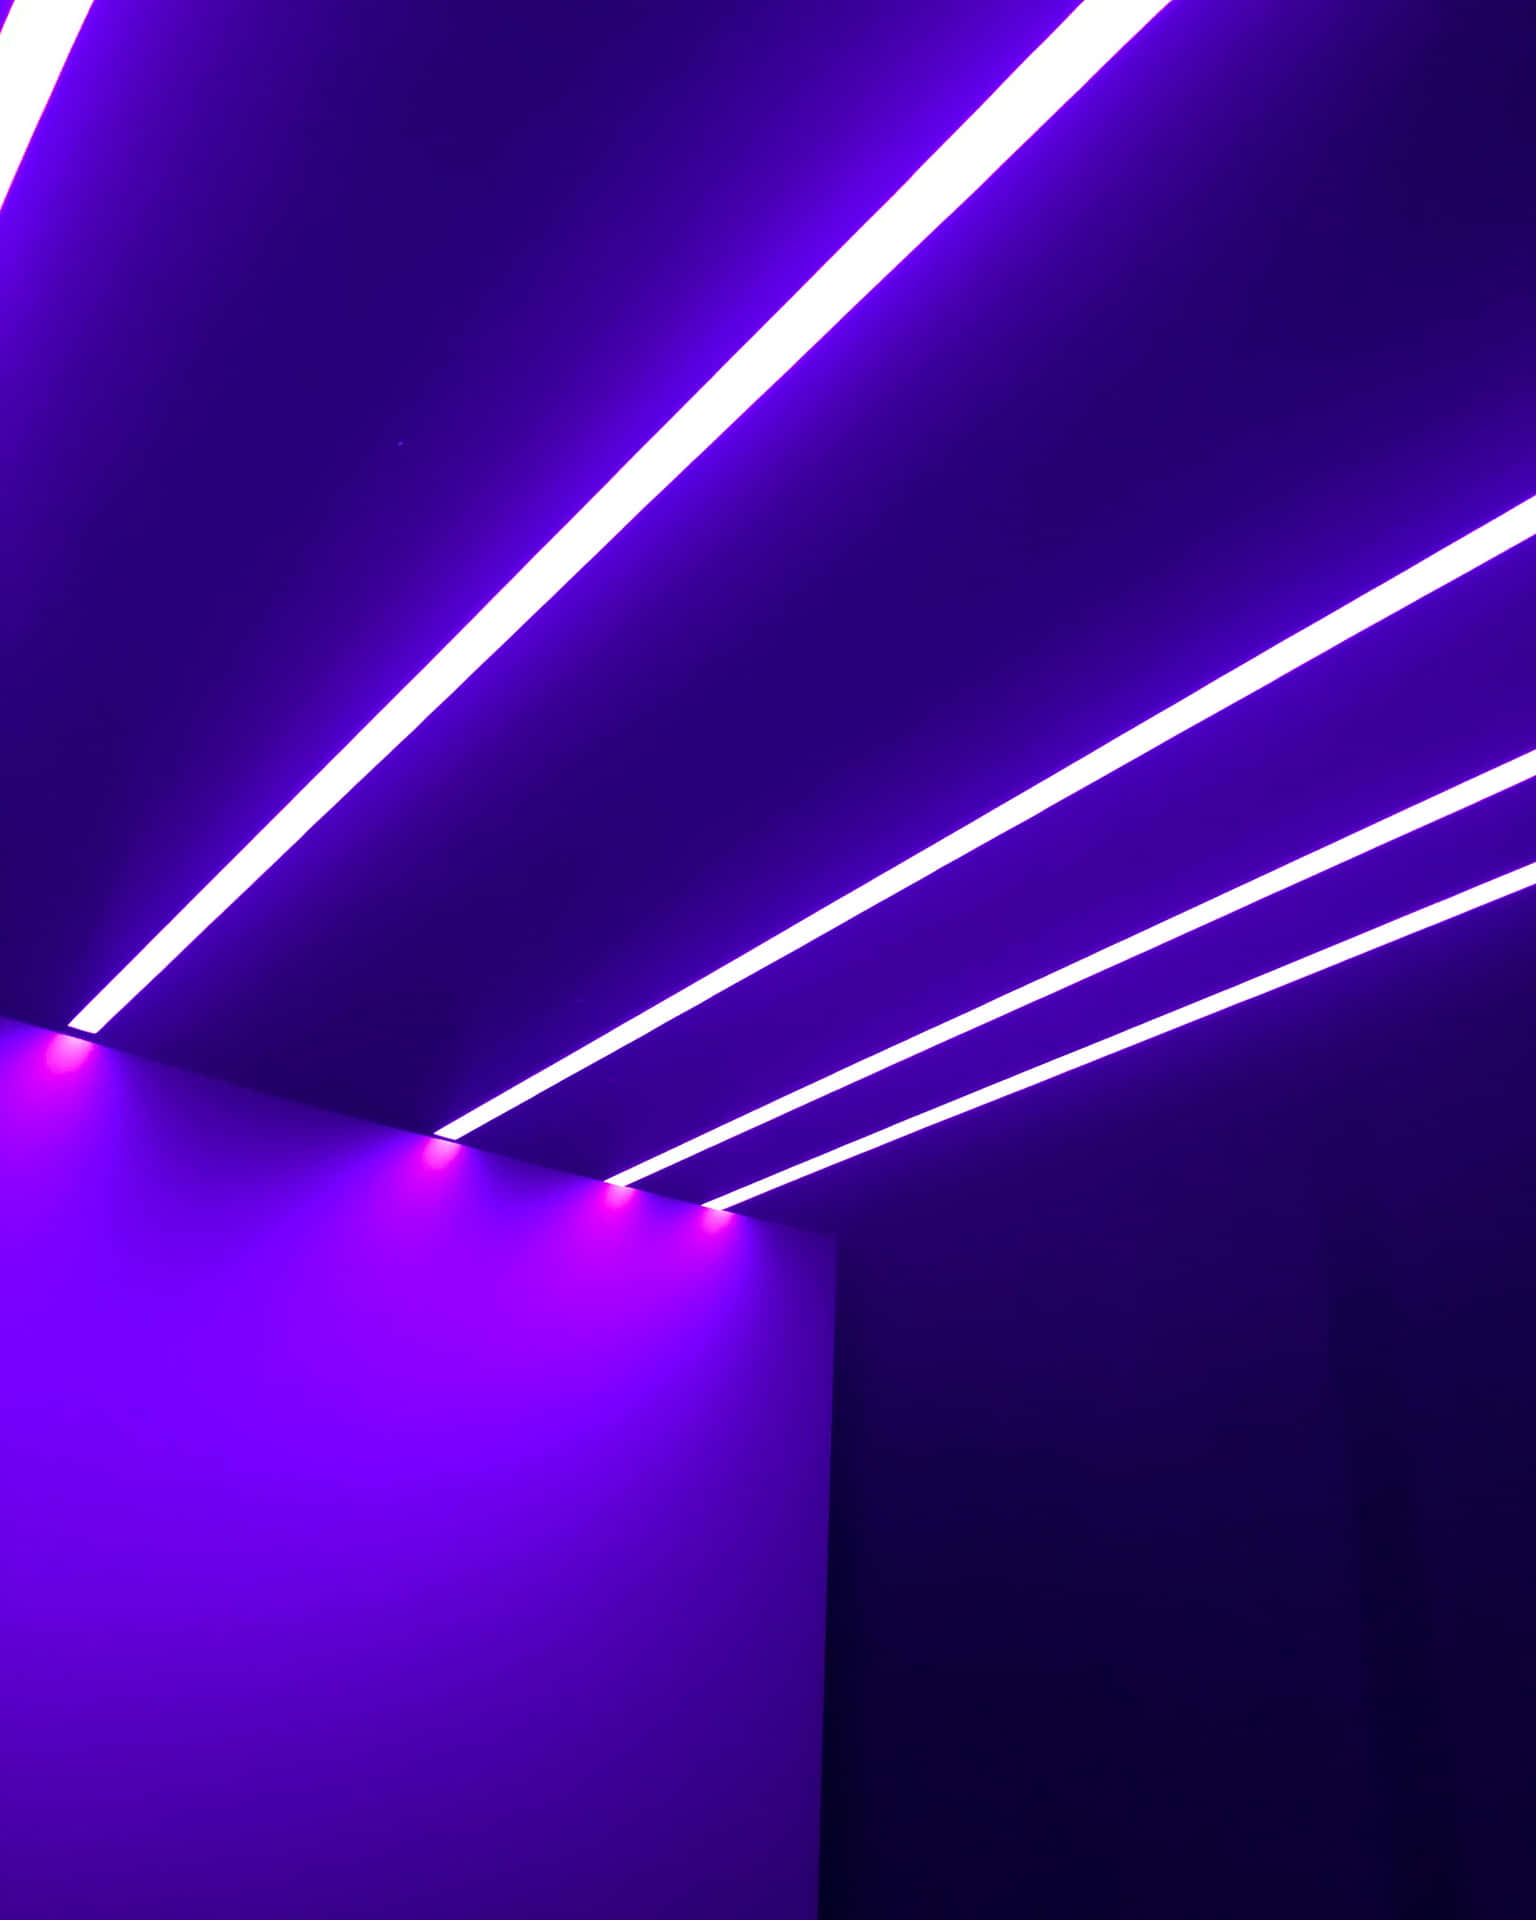 A Purple Light Is Shining In An Empty Room